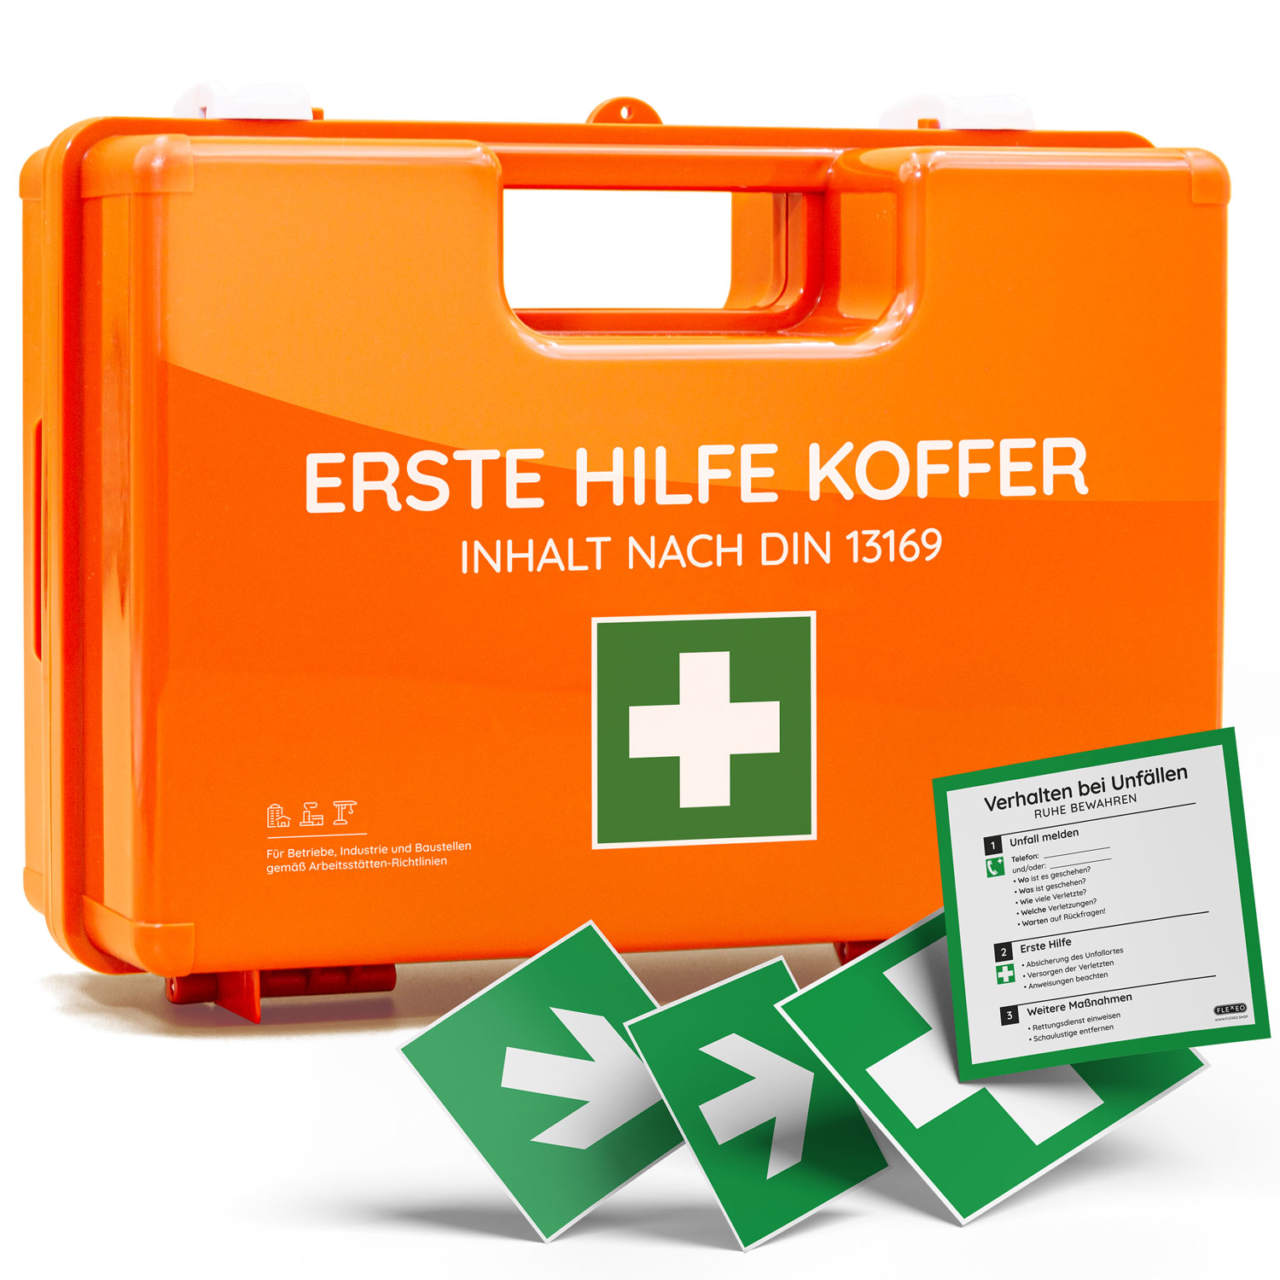 Erste-Hilfe-Koffer & Verbandskasten bestellen